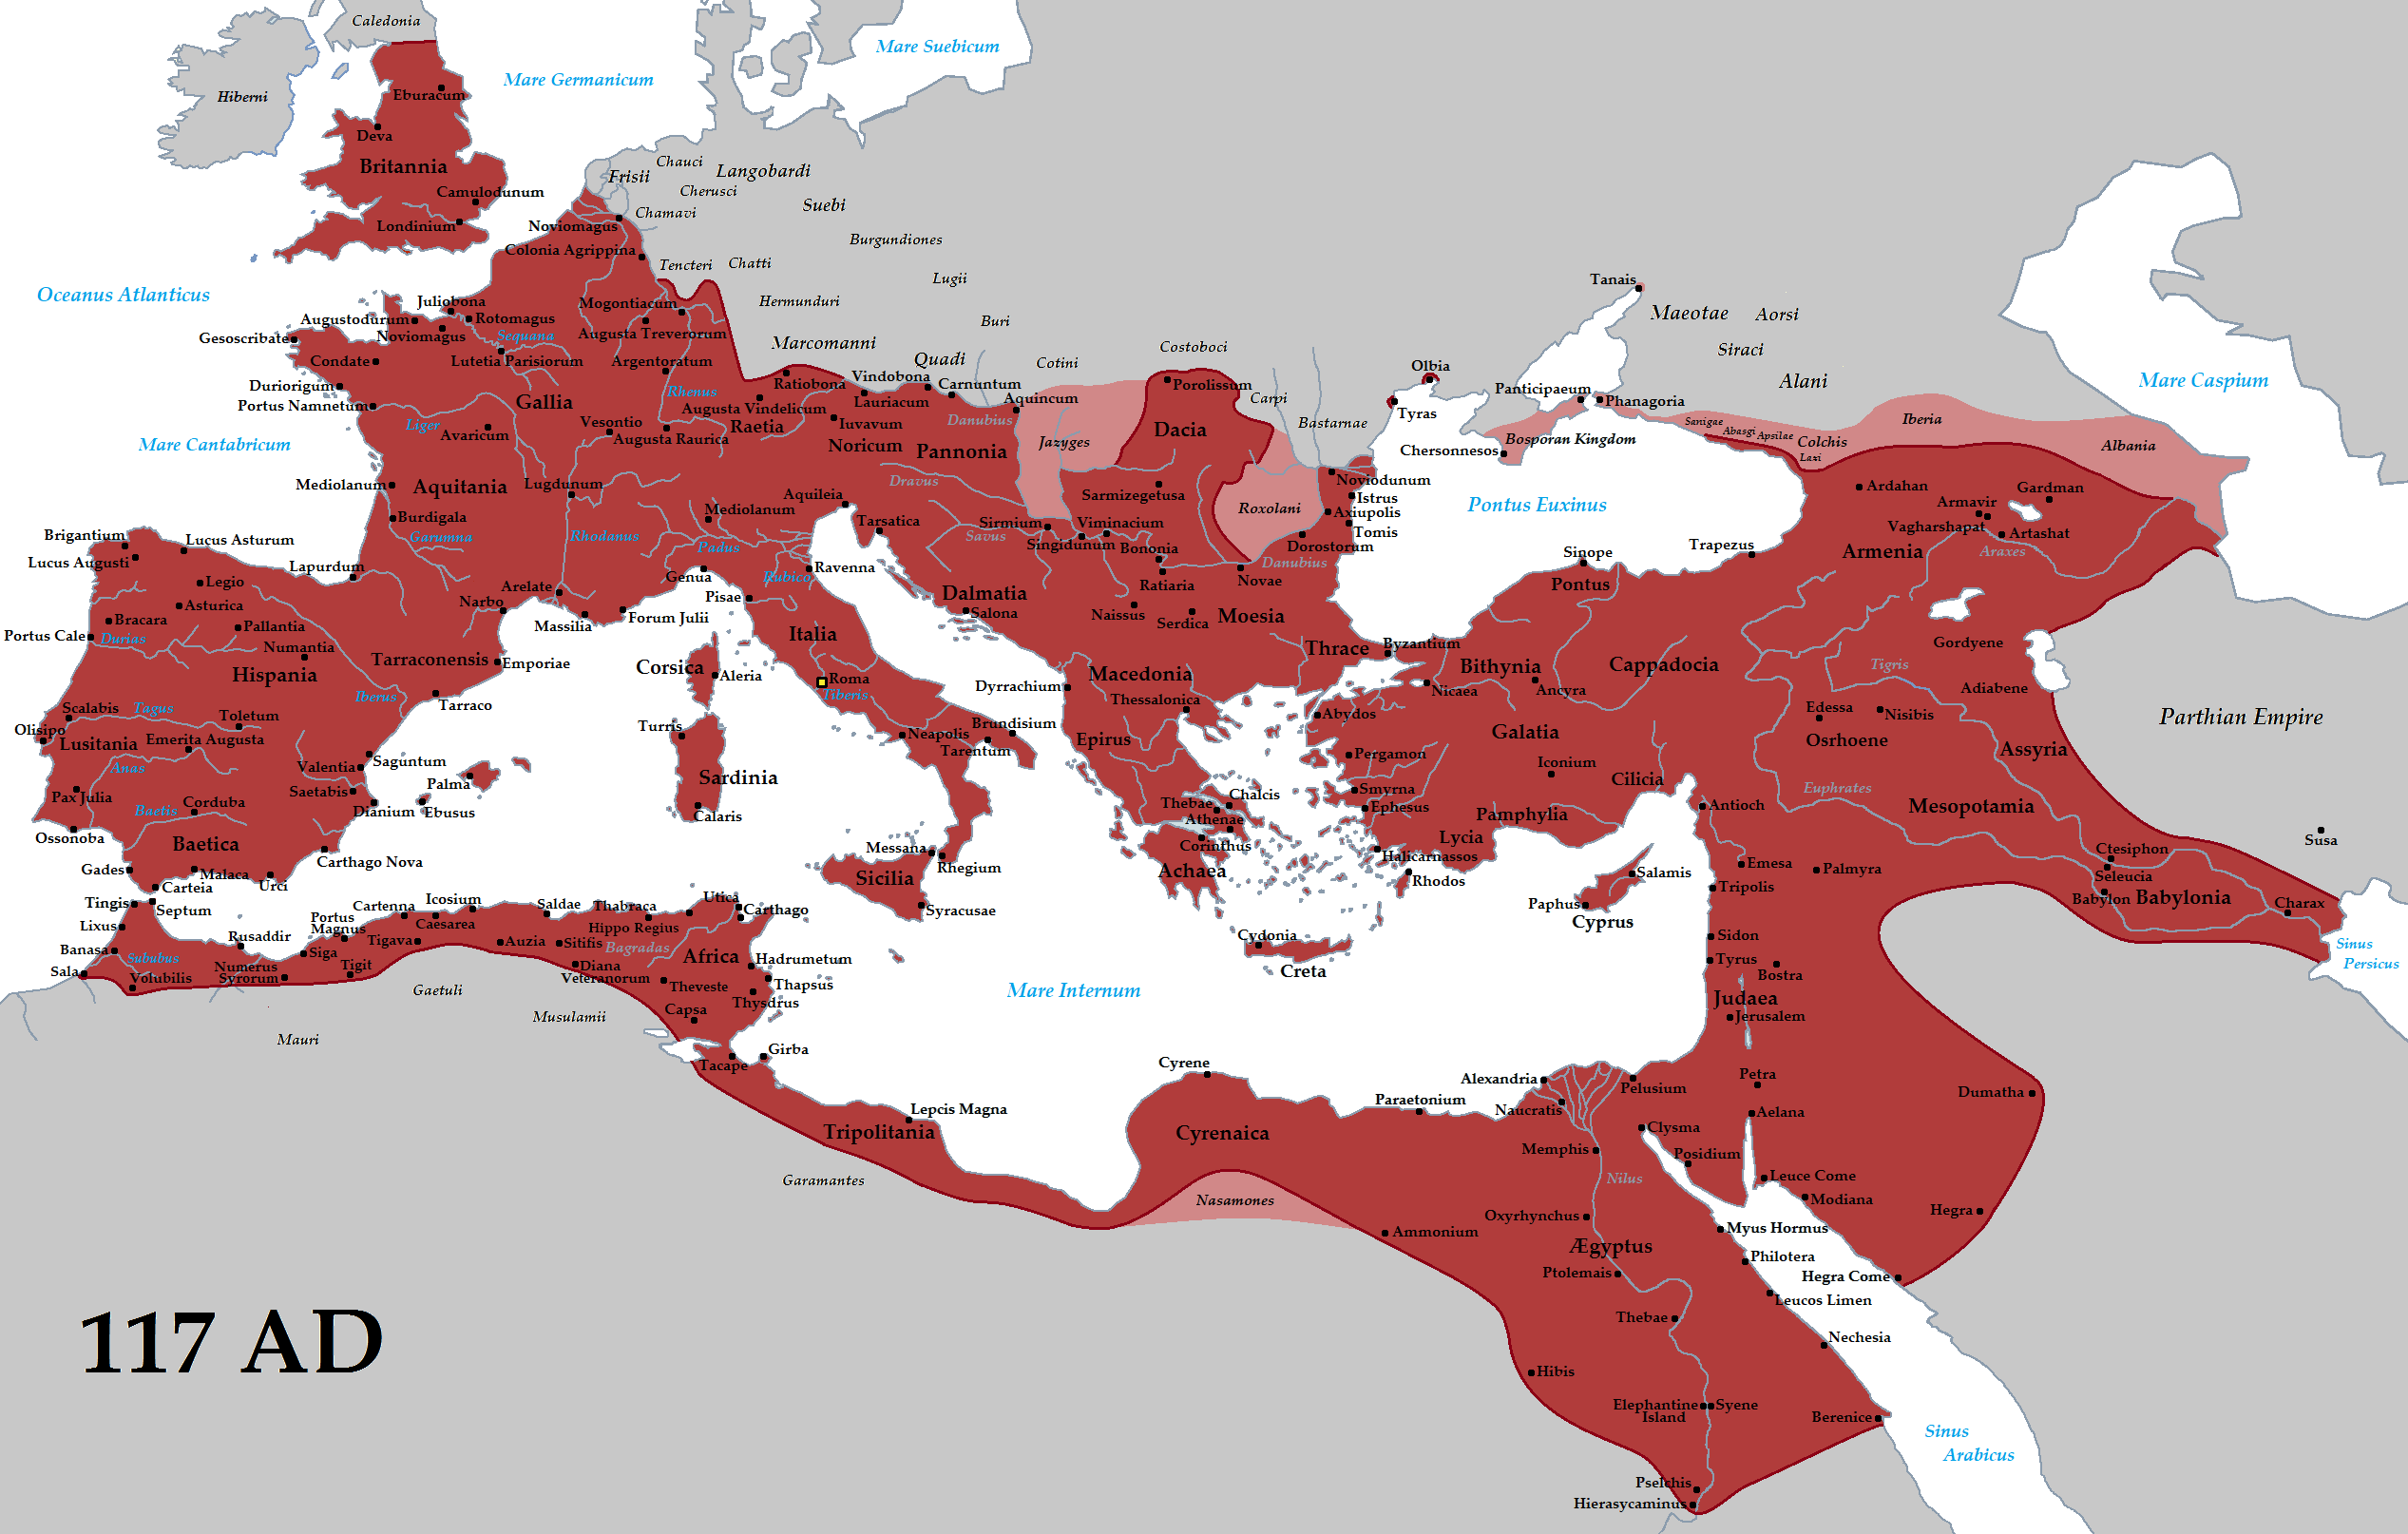 Kaartbeeld van het Romeinse Rijk ten tijde van zijn grootste expansie bij de dood van keizer Trajanus in 117 n.Chr.